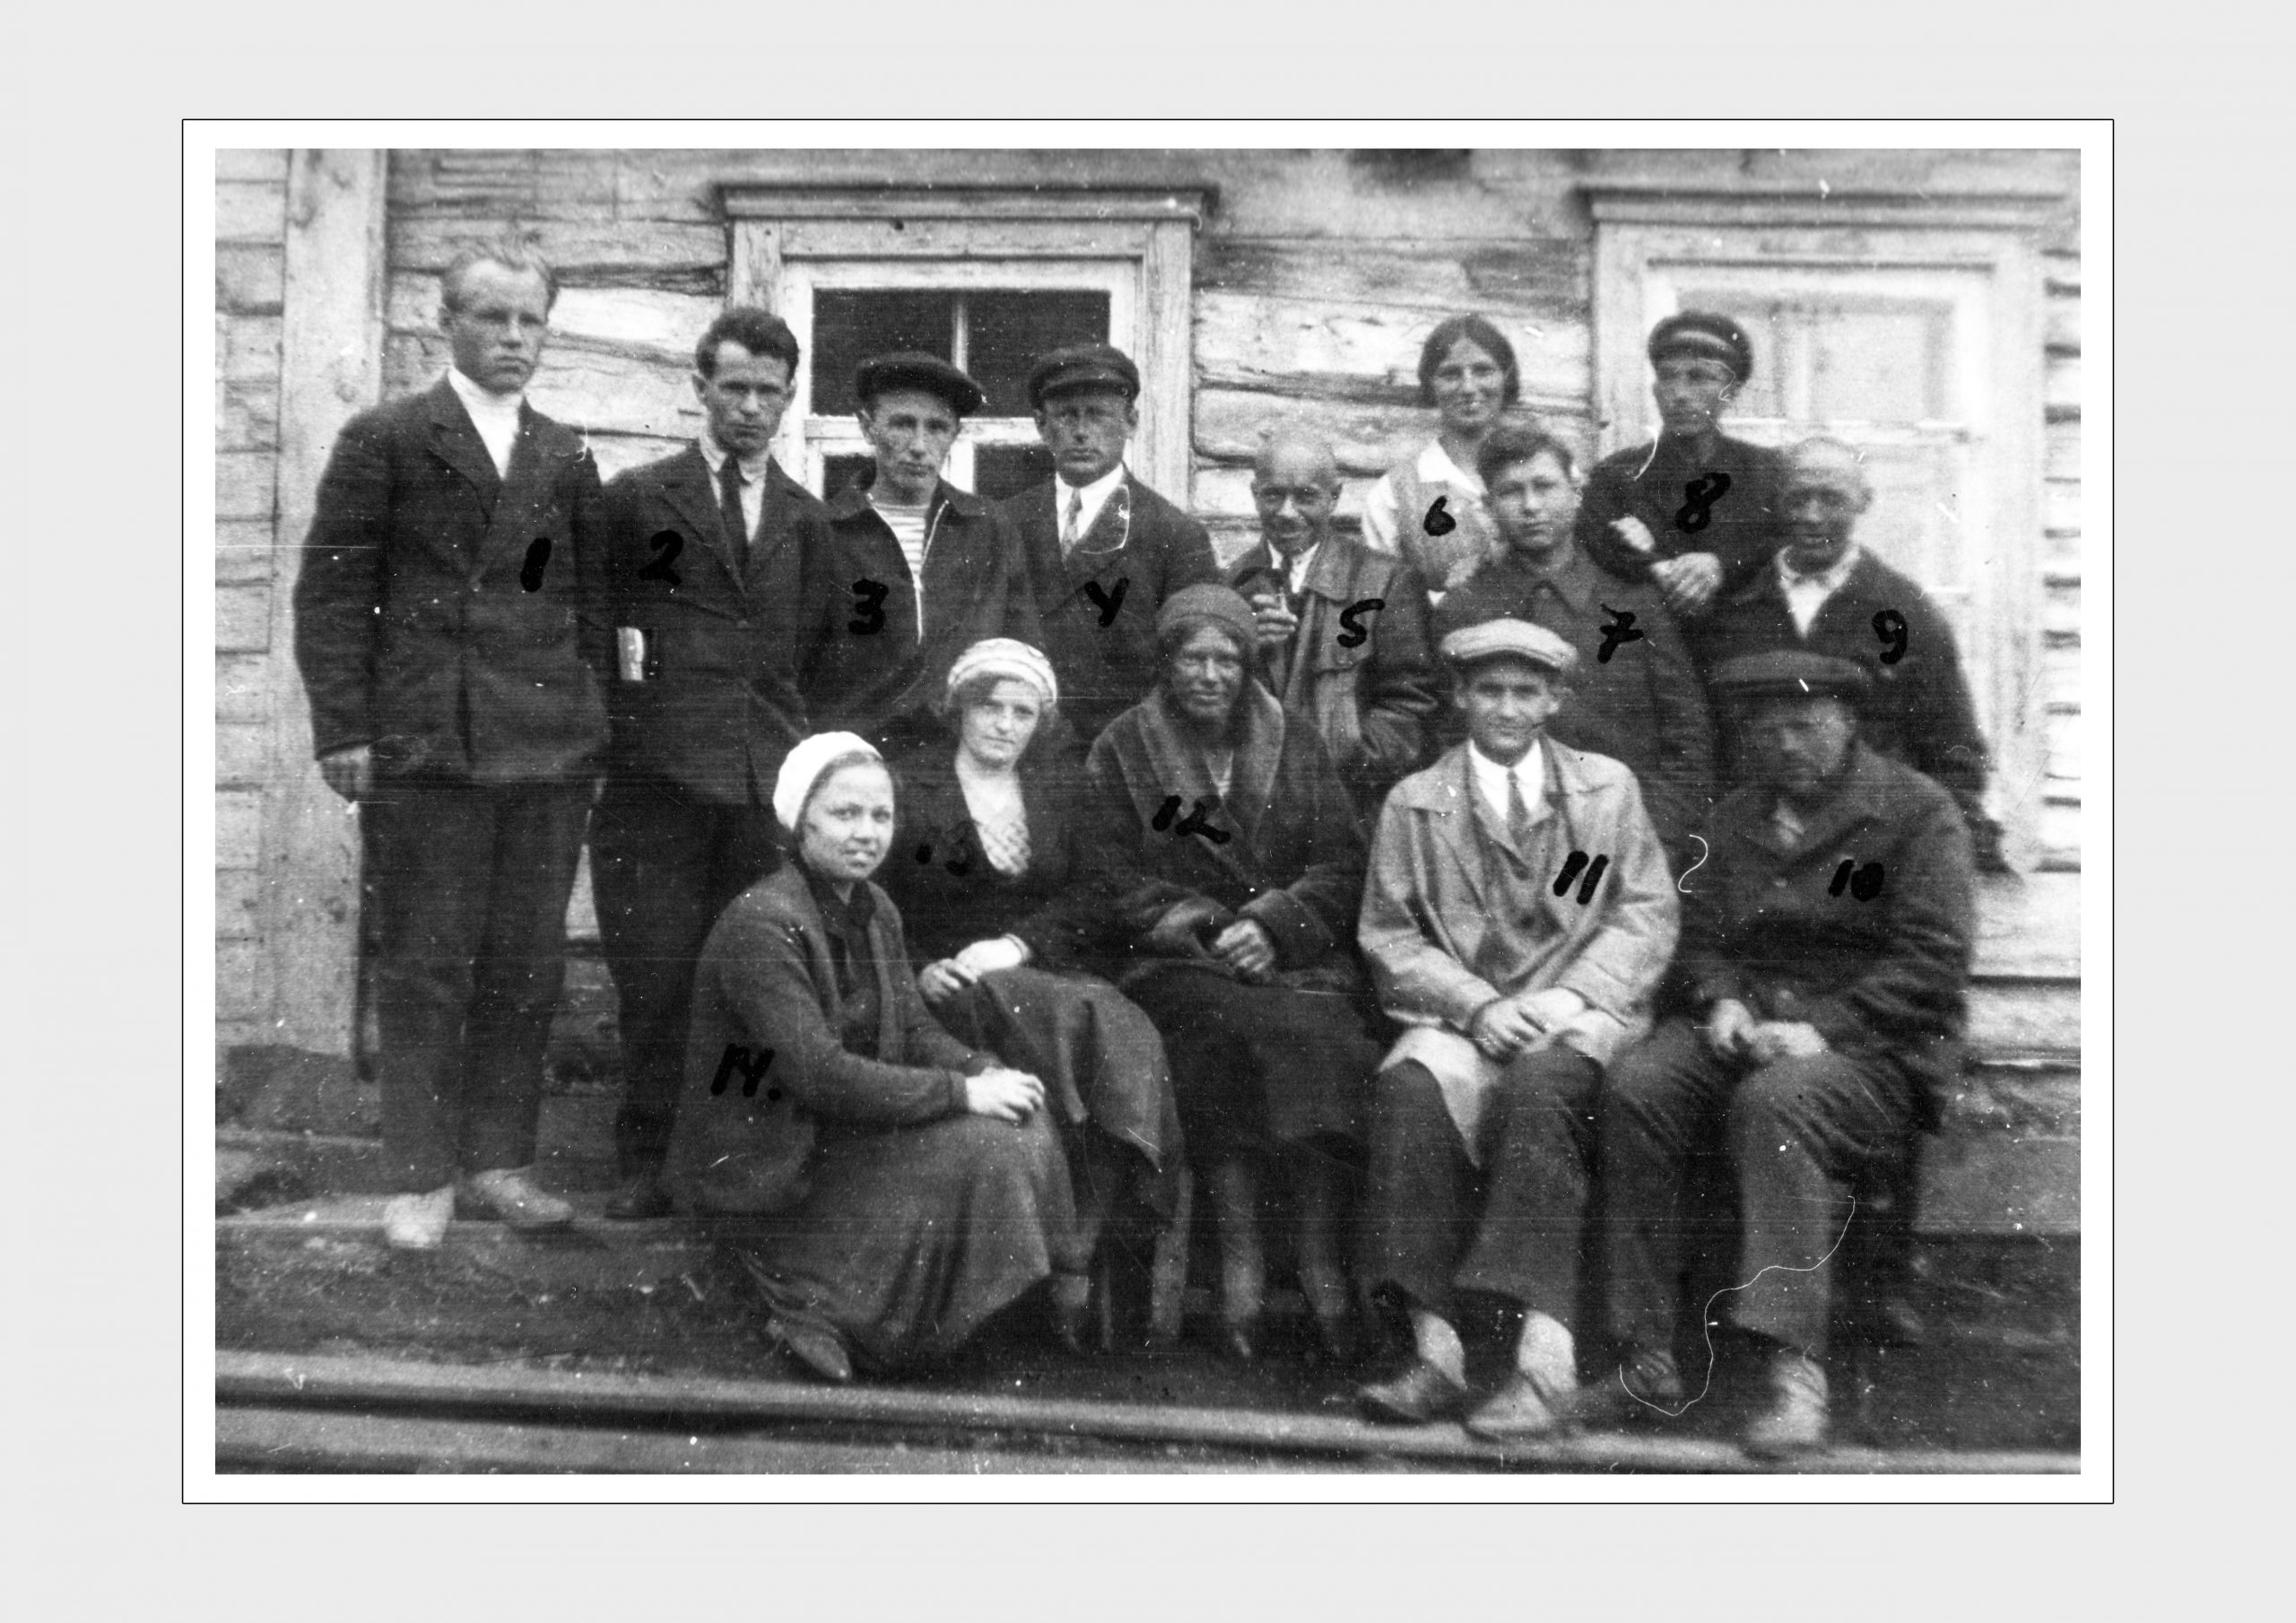 Коллектив Камчатского отделения ТИНРО
Конец 1930-х гг.